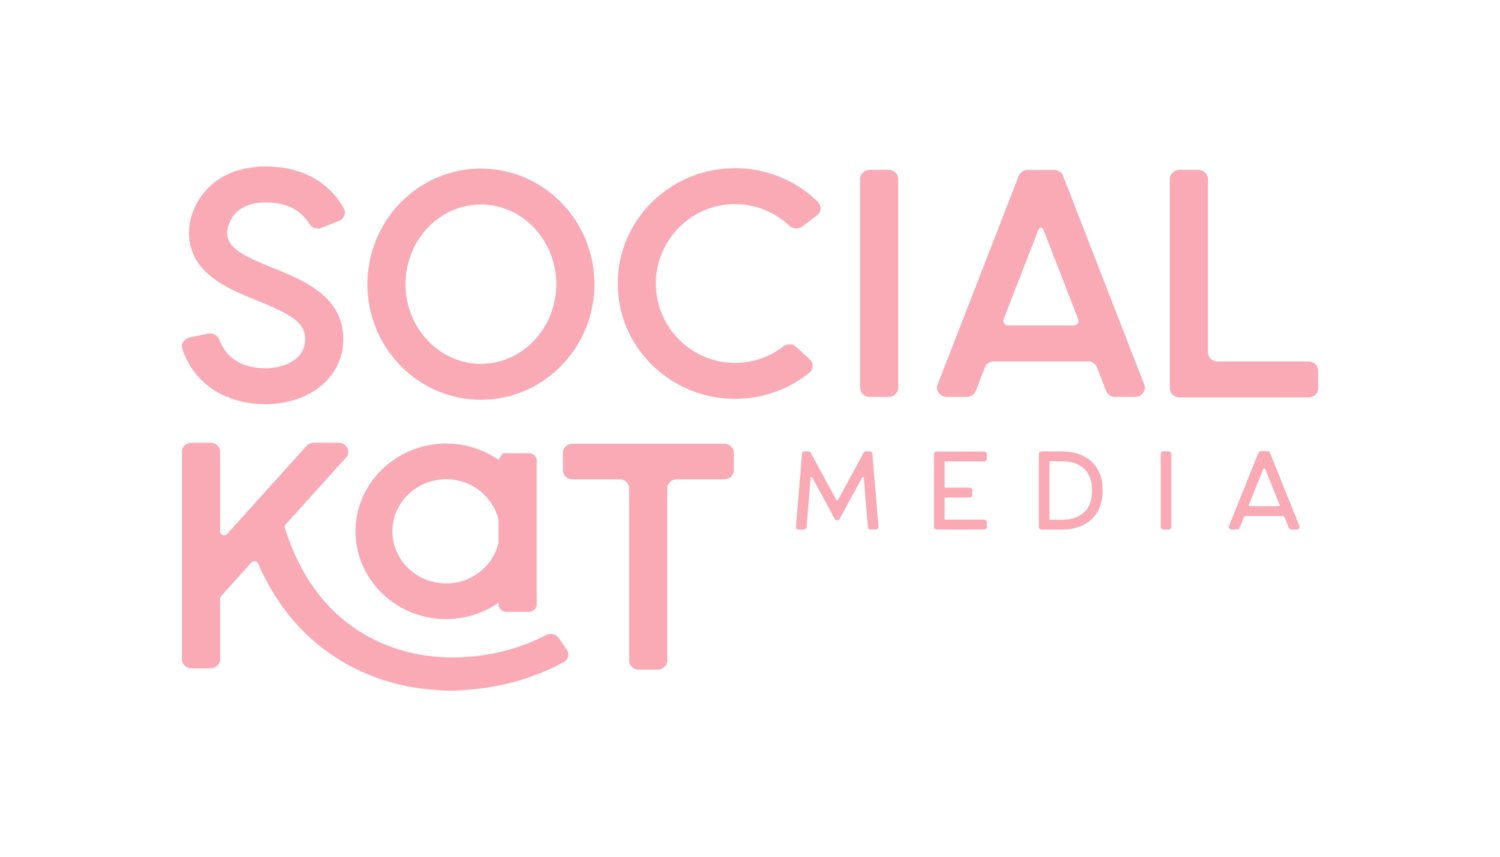 Social Kat Media